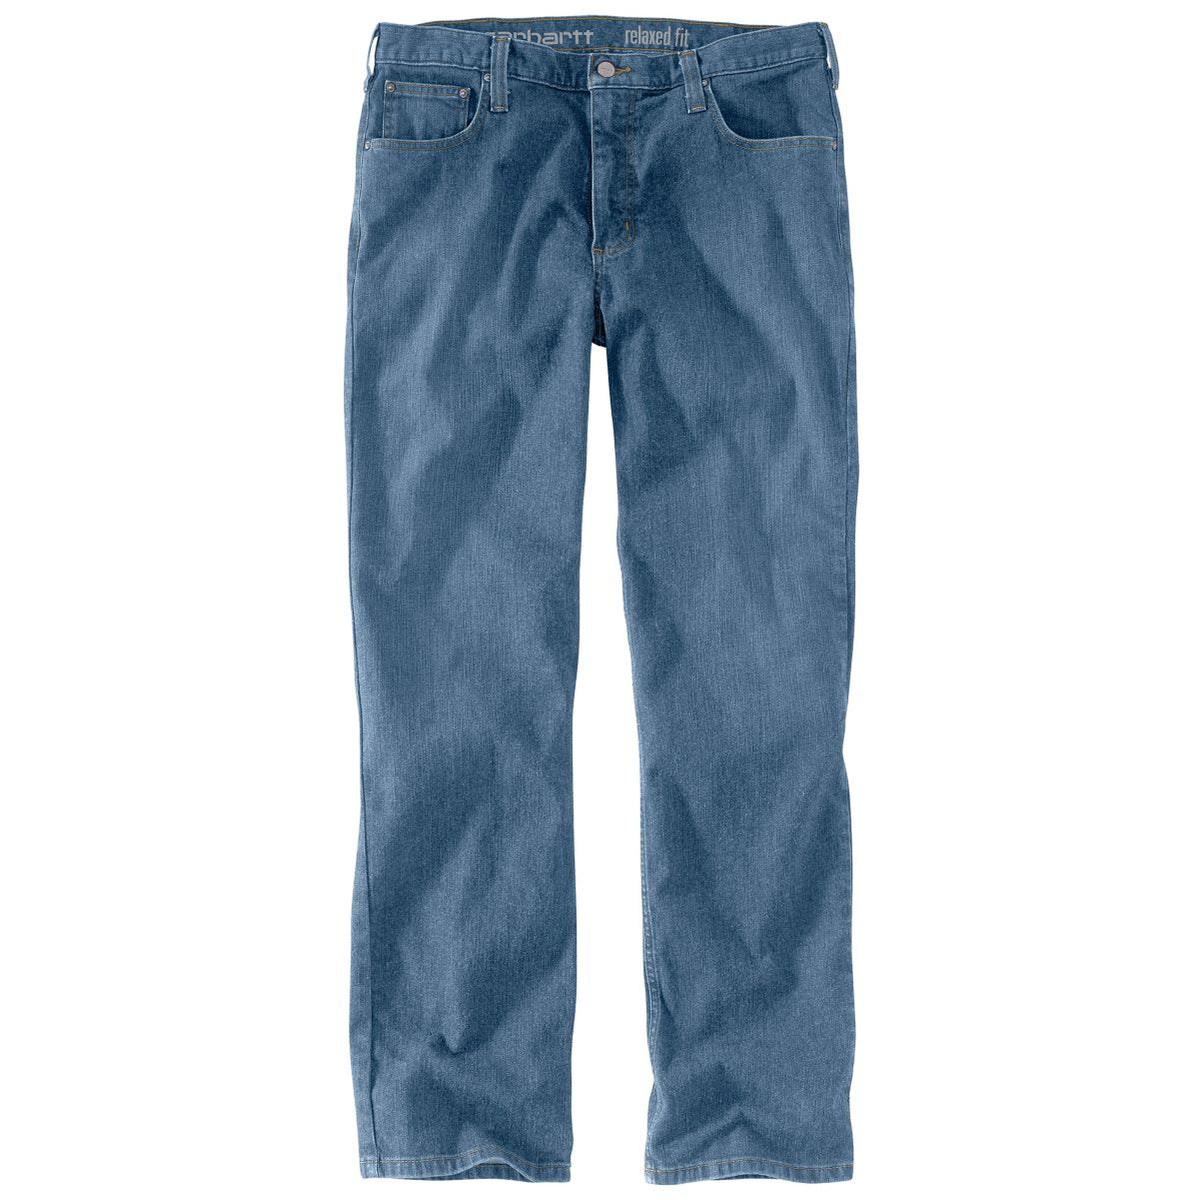 CINCH Jeans  Men's 5 Firehose Boxer Briefs - Navy